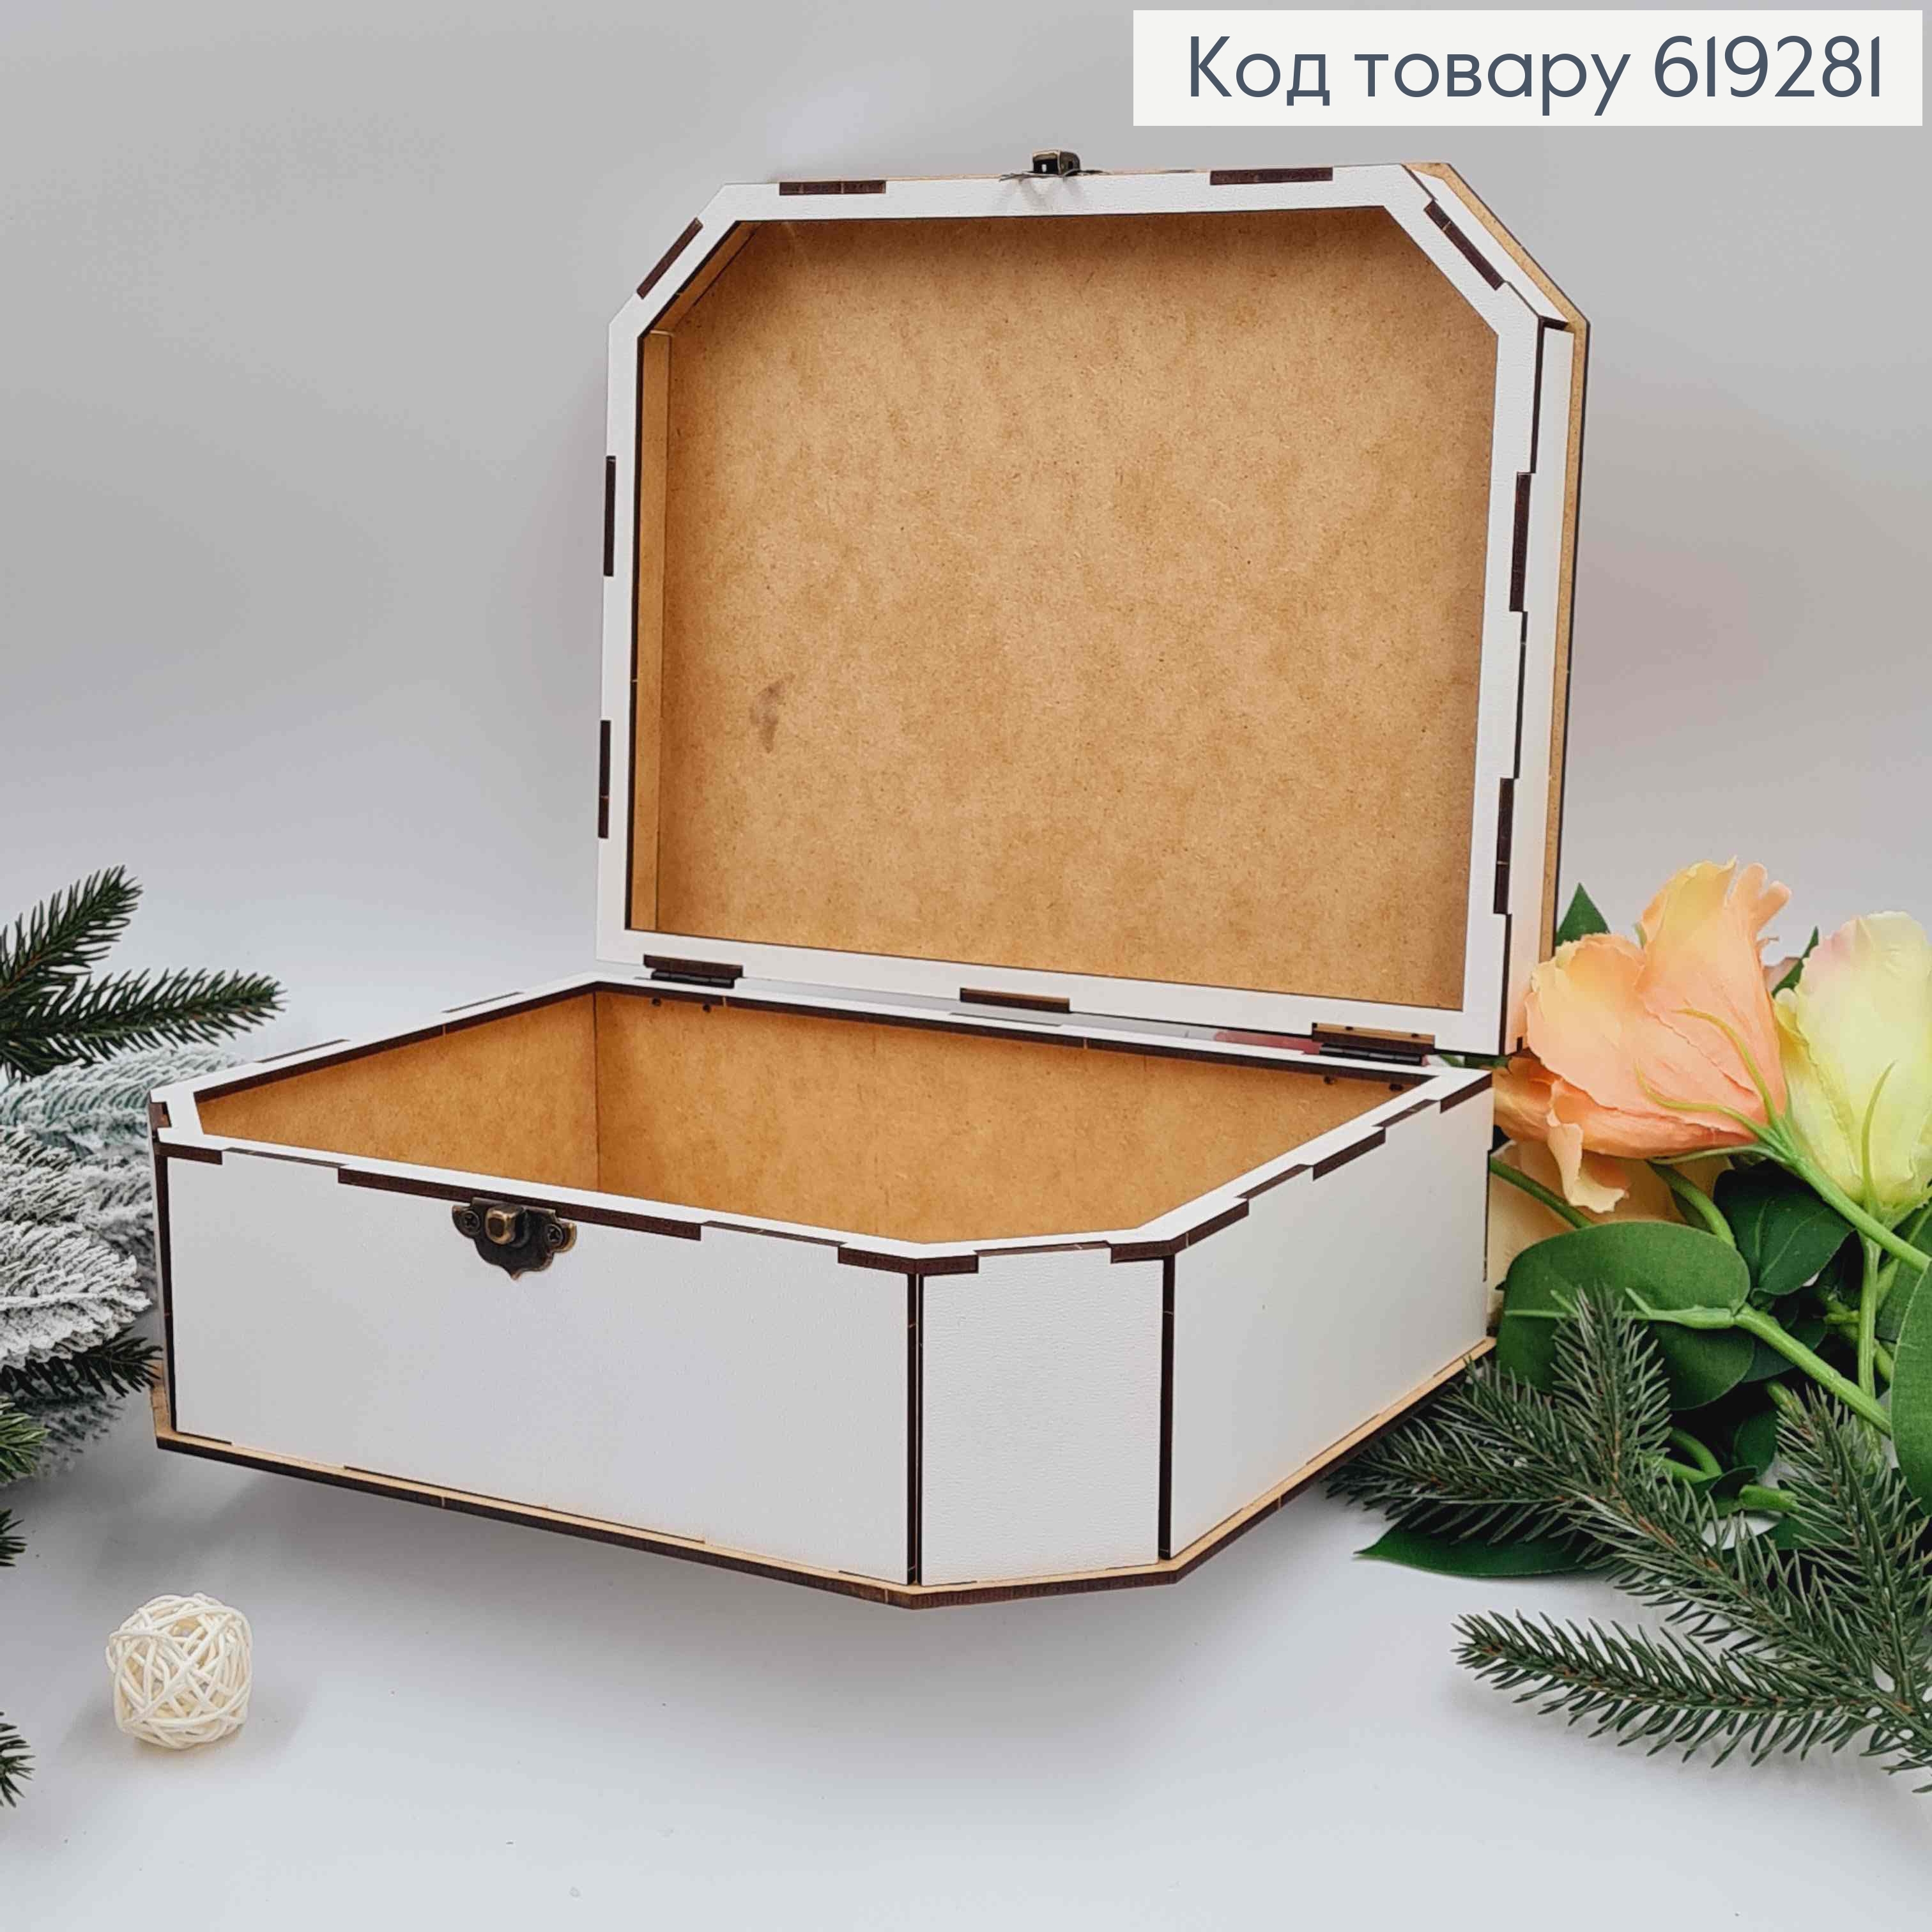 Деревянная подарочная коробка, Белая, 24*19*6см, на застежке. Украина 619281 фото 2